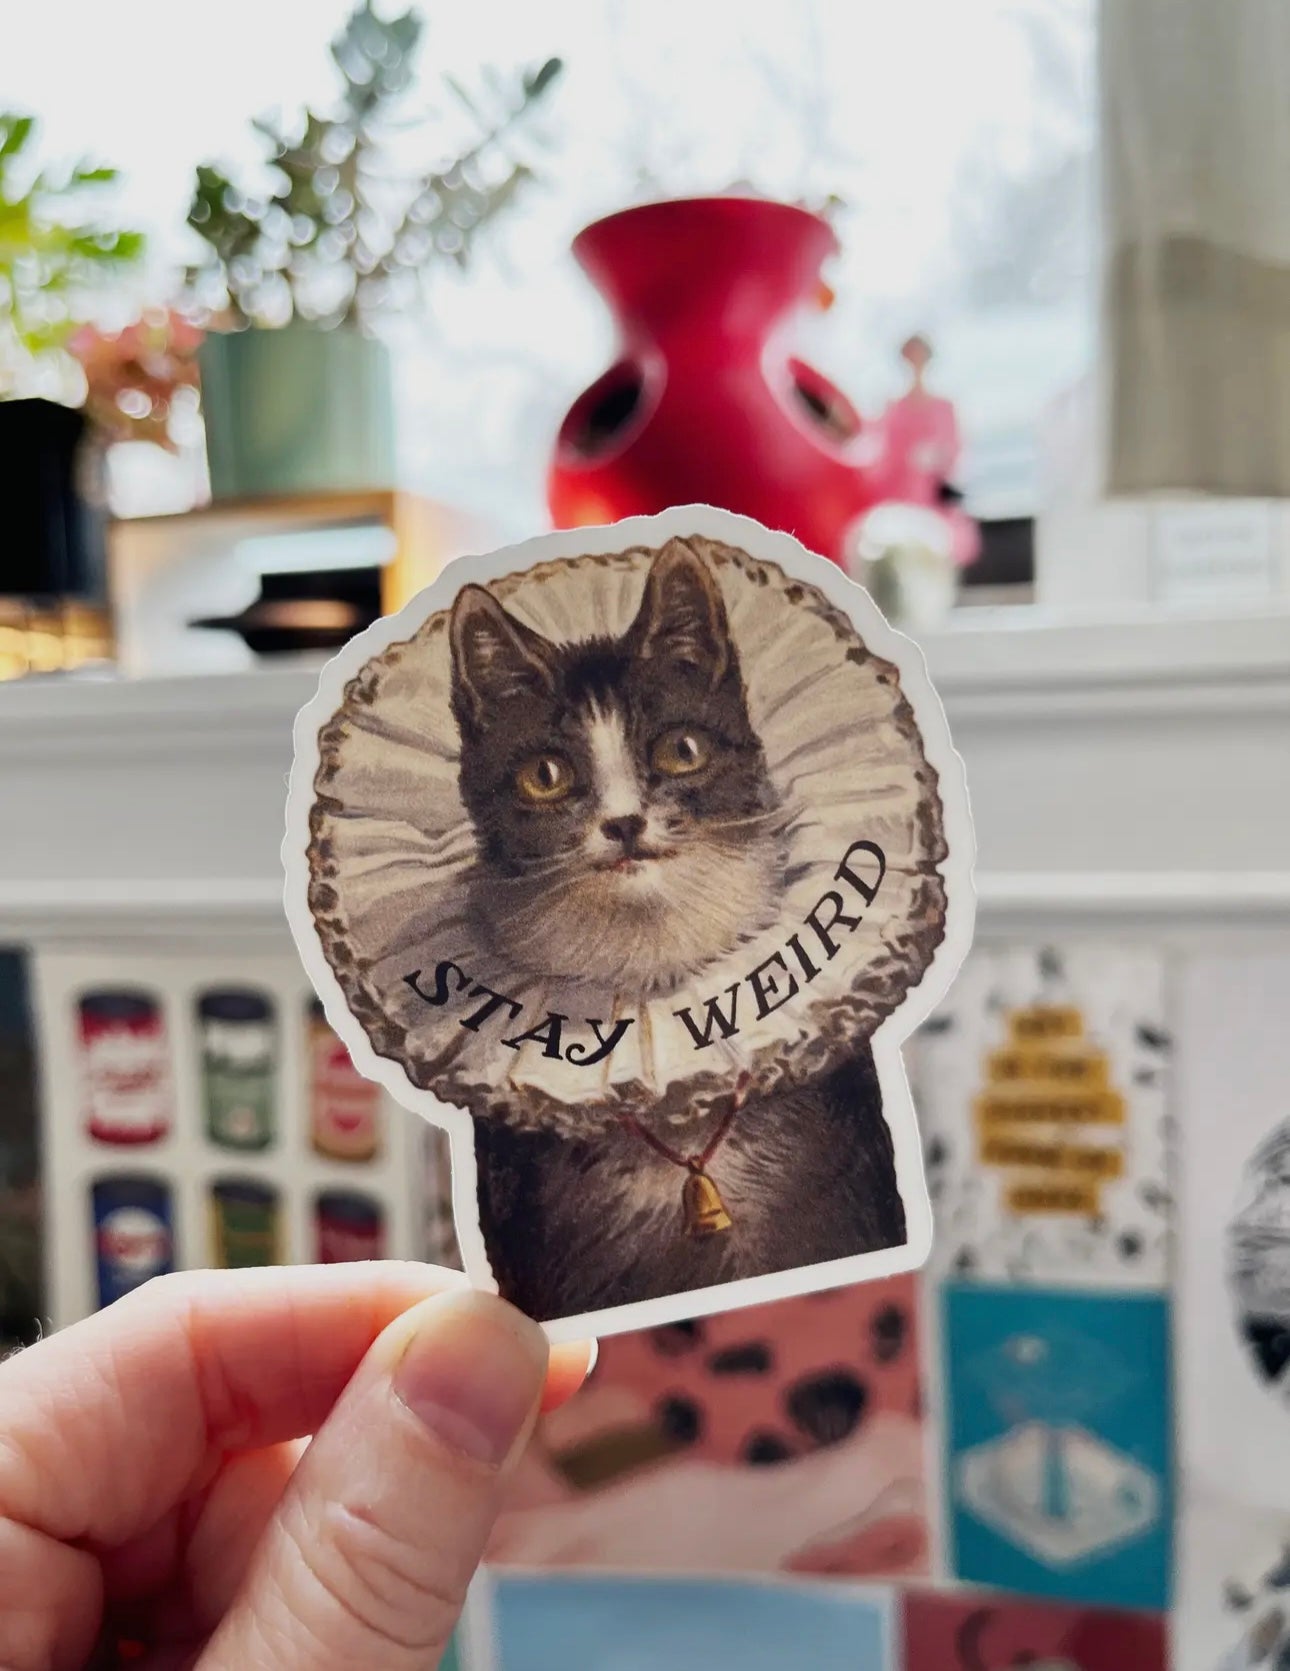 Stay Weird Kitty Vintage Sticker